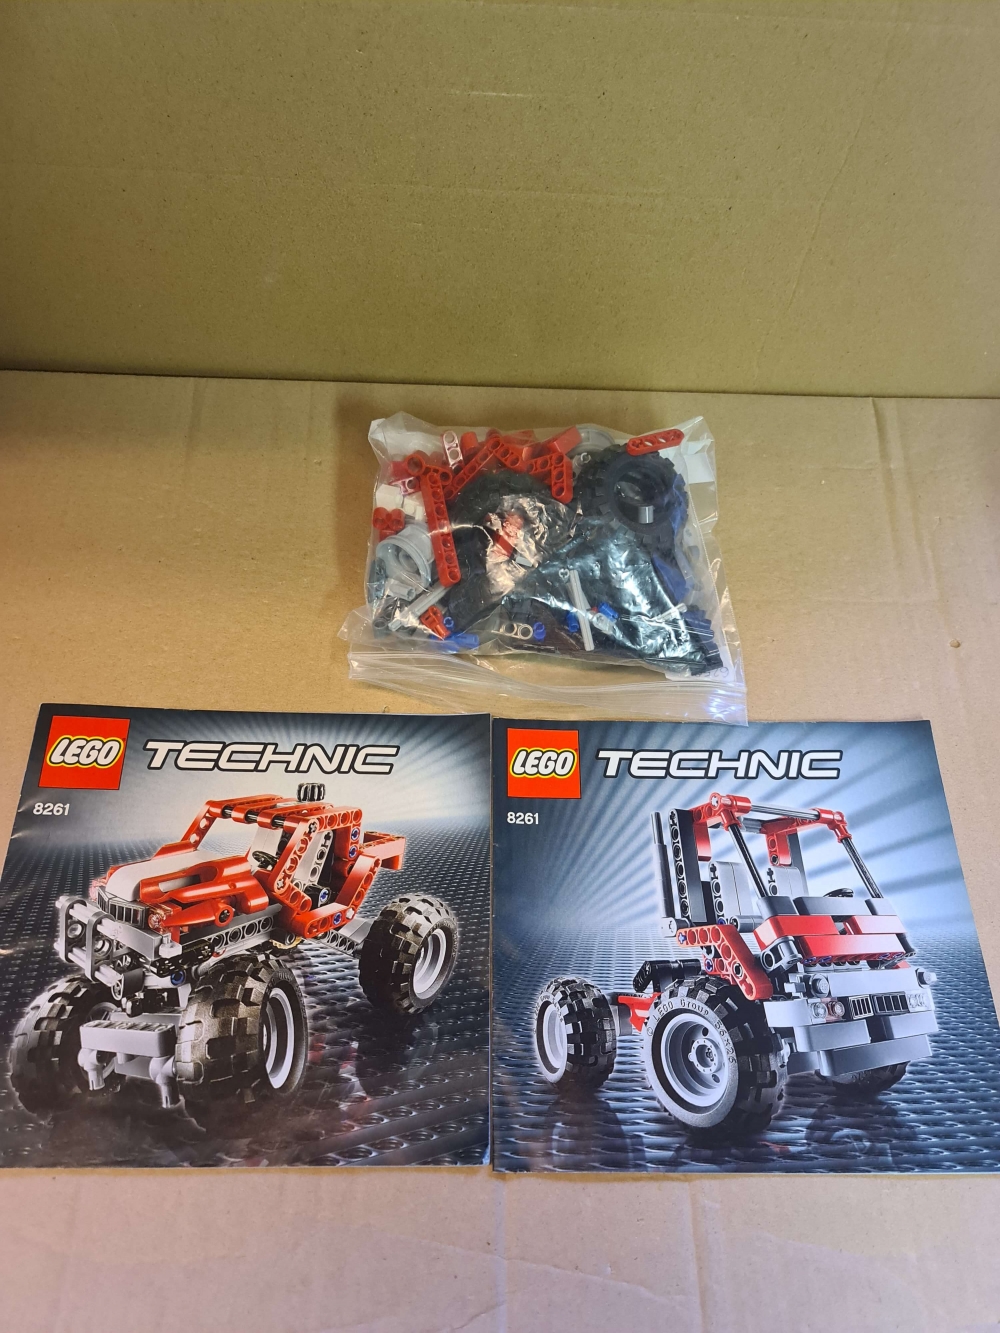 Sett 8261 fra Lego Technic serien.
Som nytt.
Komplett med manualer.